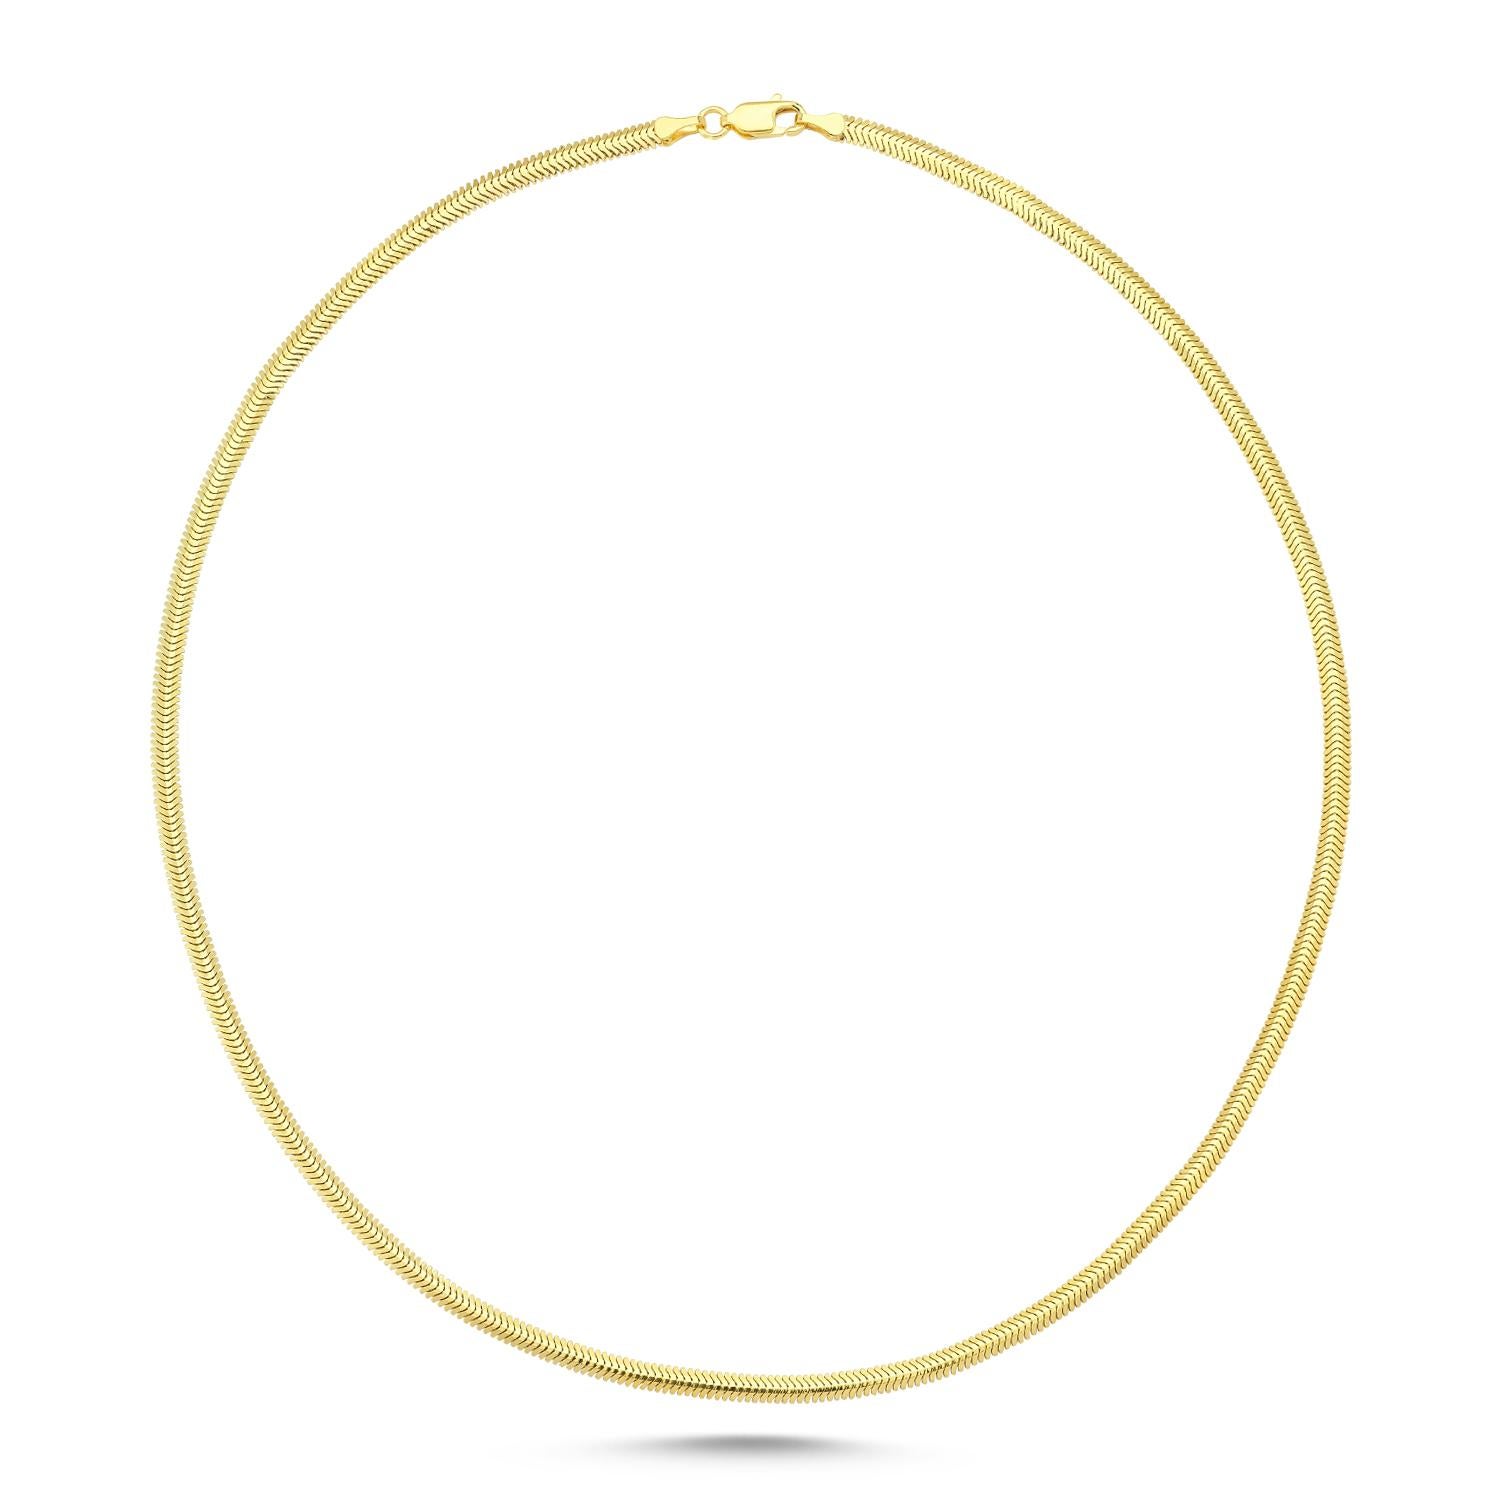 Collier chaîne serpent en or jaune 14k par Selda Jewellery

Informations complémentaires:-
Collection : Collection 